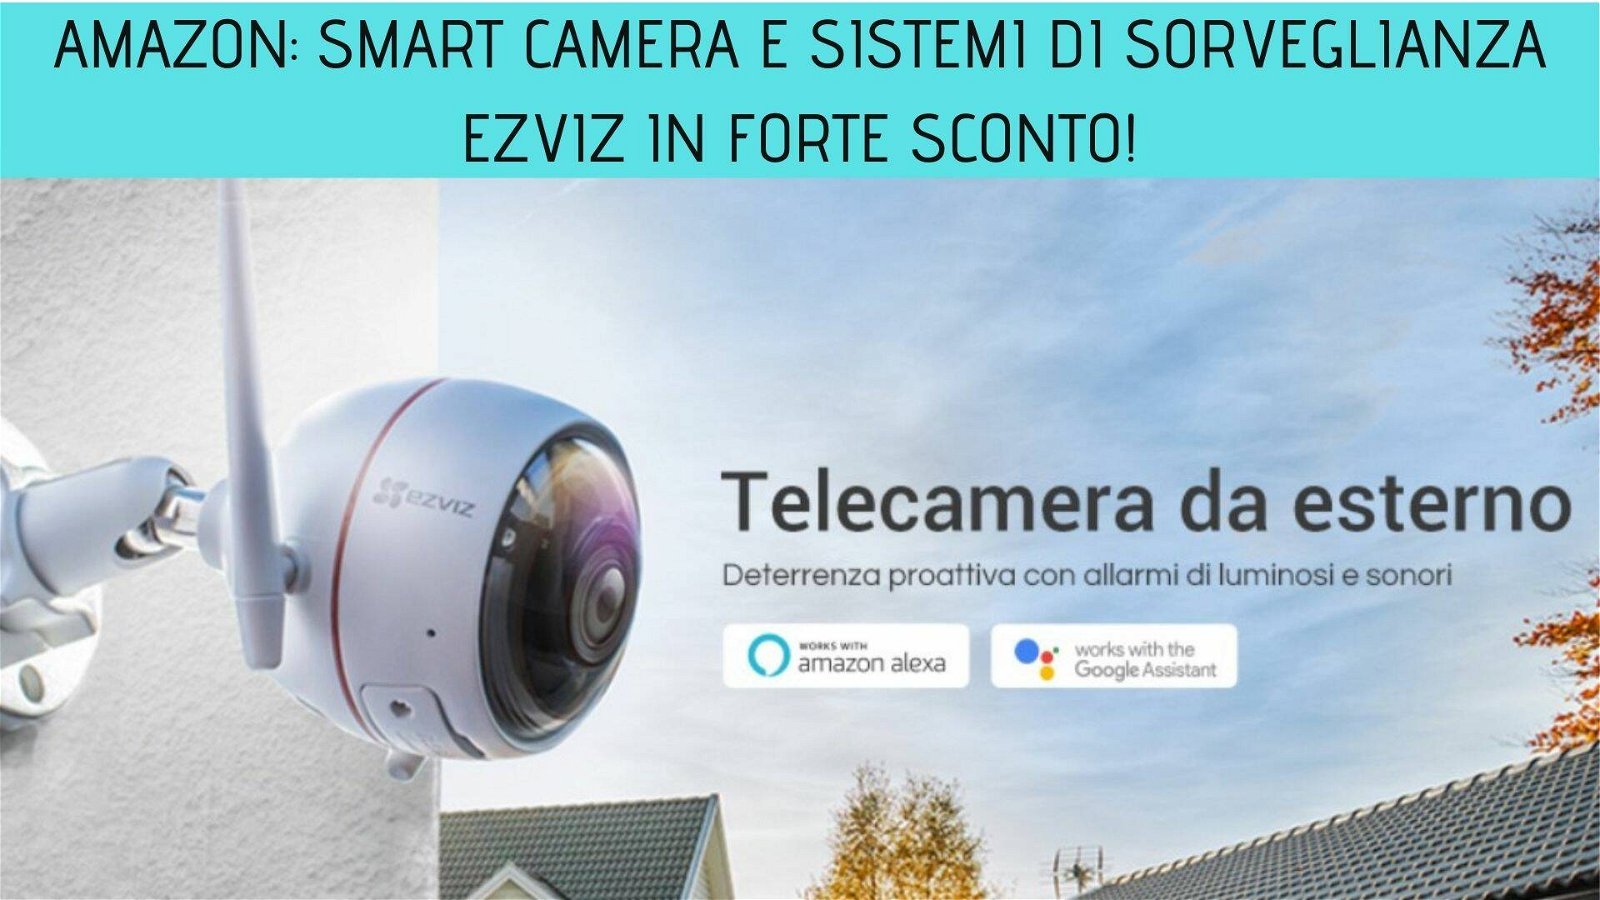 Immagine di Amazon: smart camera e sistemi di sorveglianza Ezviz in forte sconto!